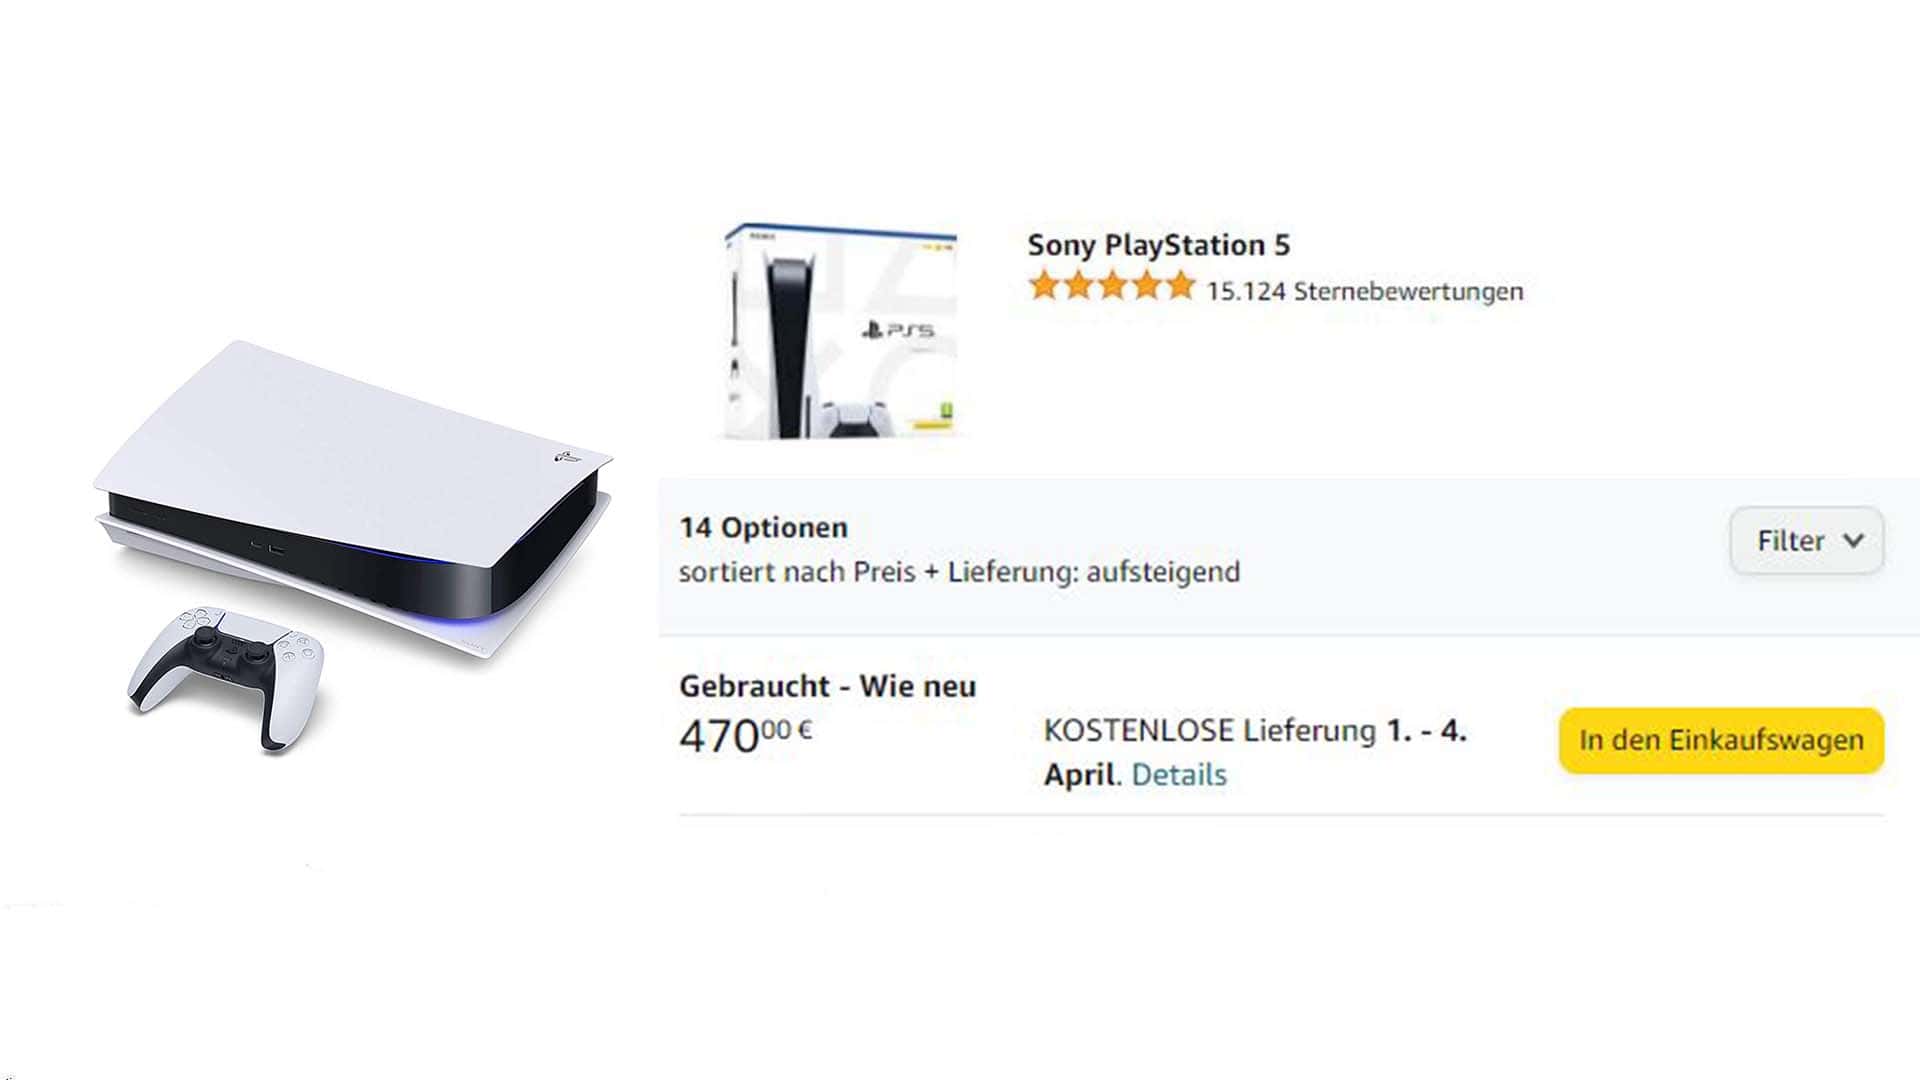 Kup PlayStation 5 (PS5) teraz – dostępne również na Amazon